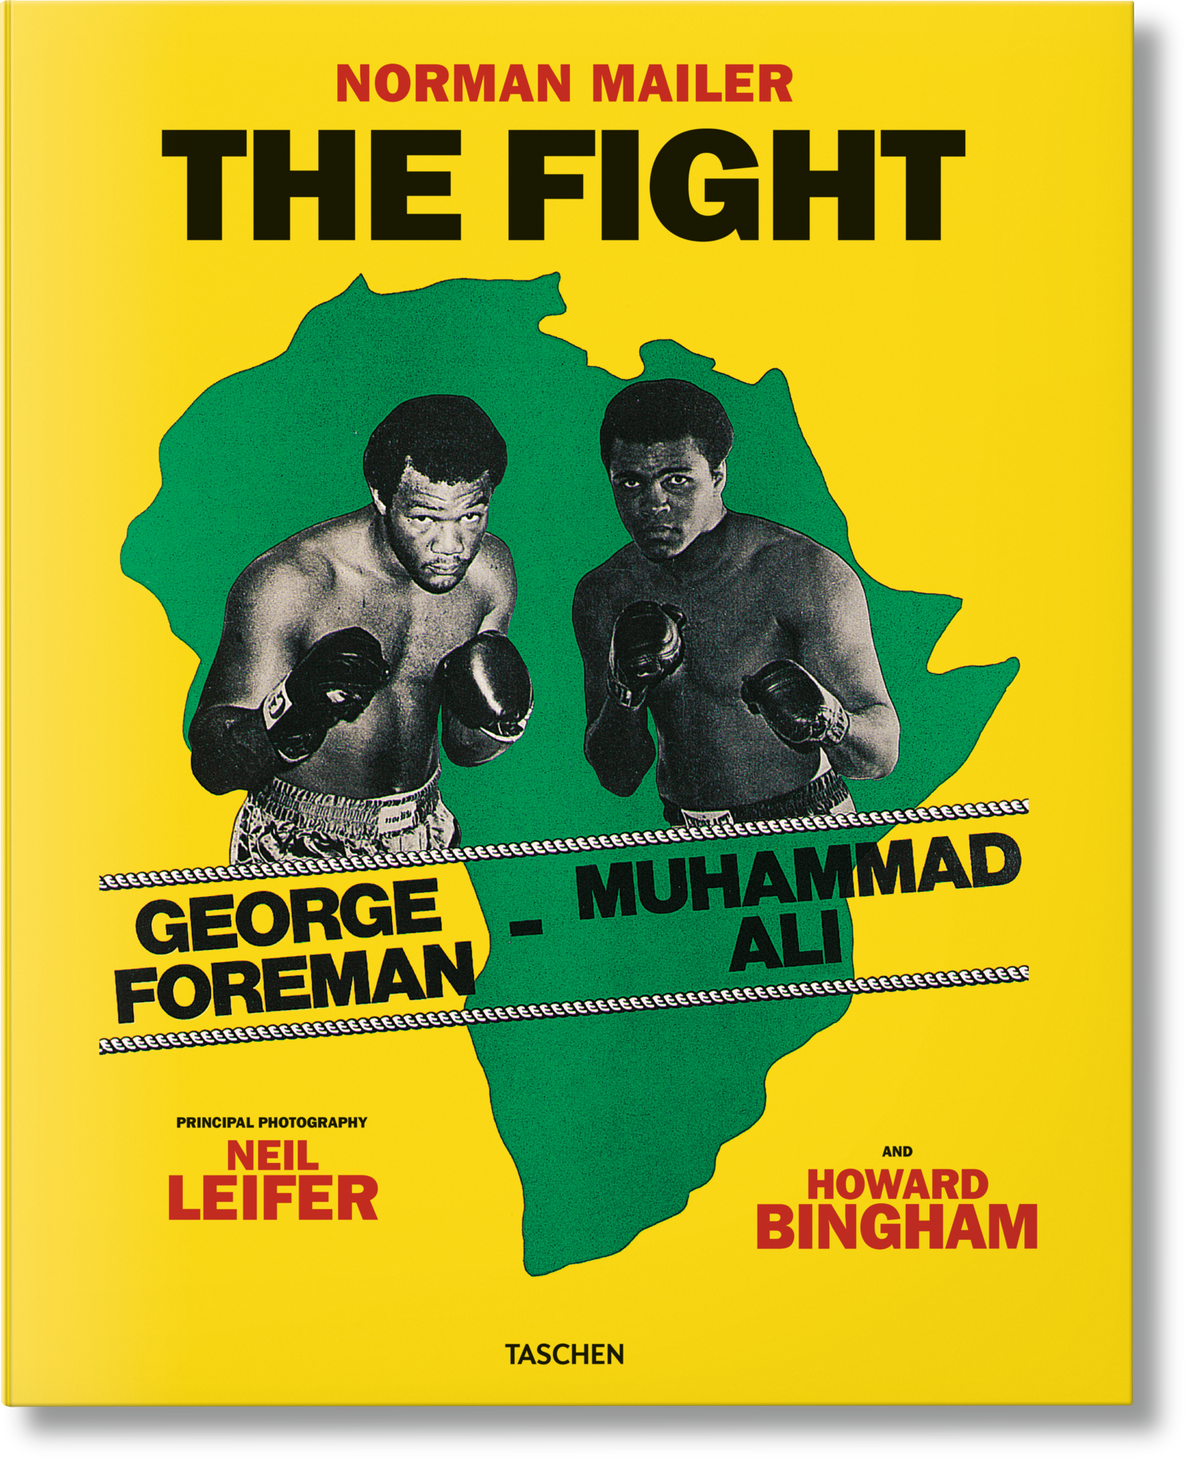 Norman Mailer. Neil Leifer. Howard Bingham. The Fight